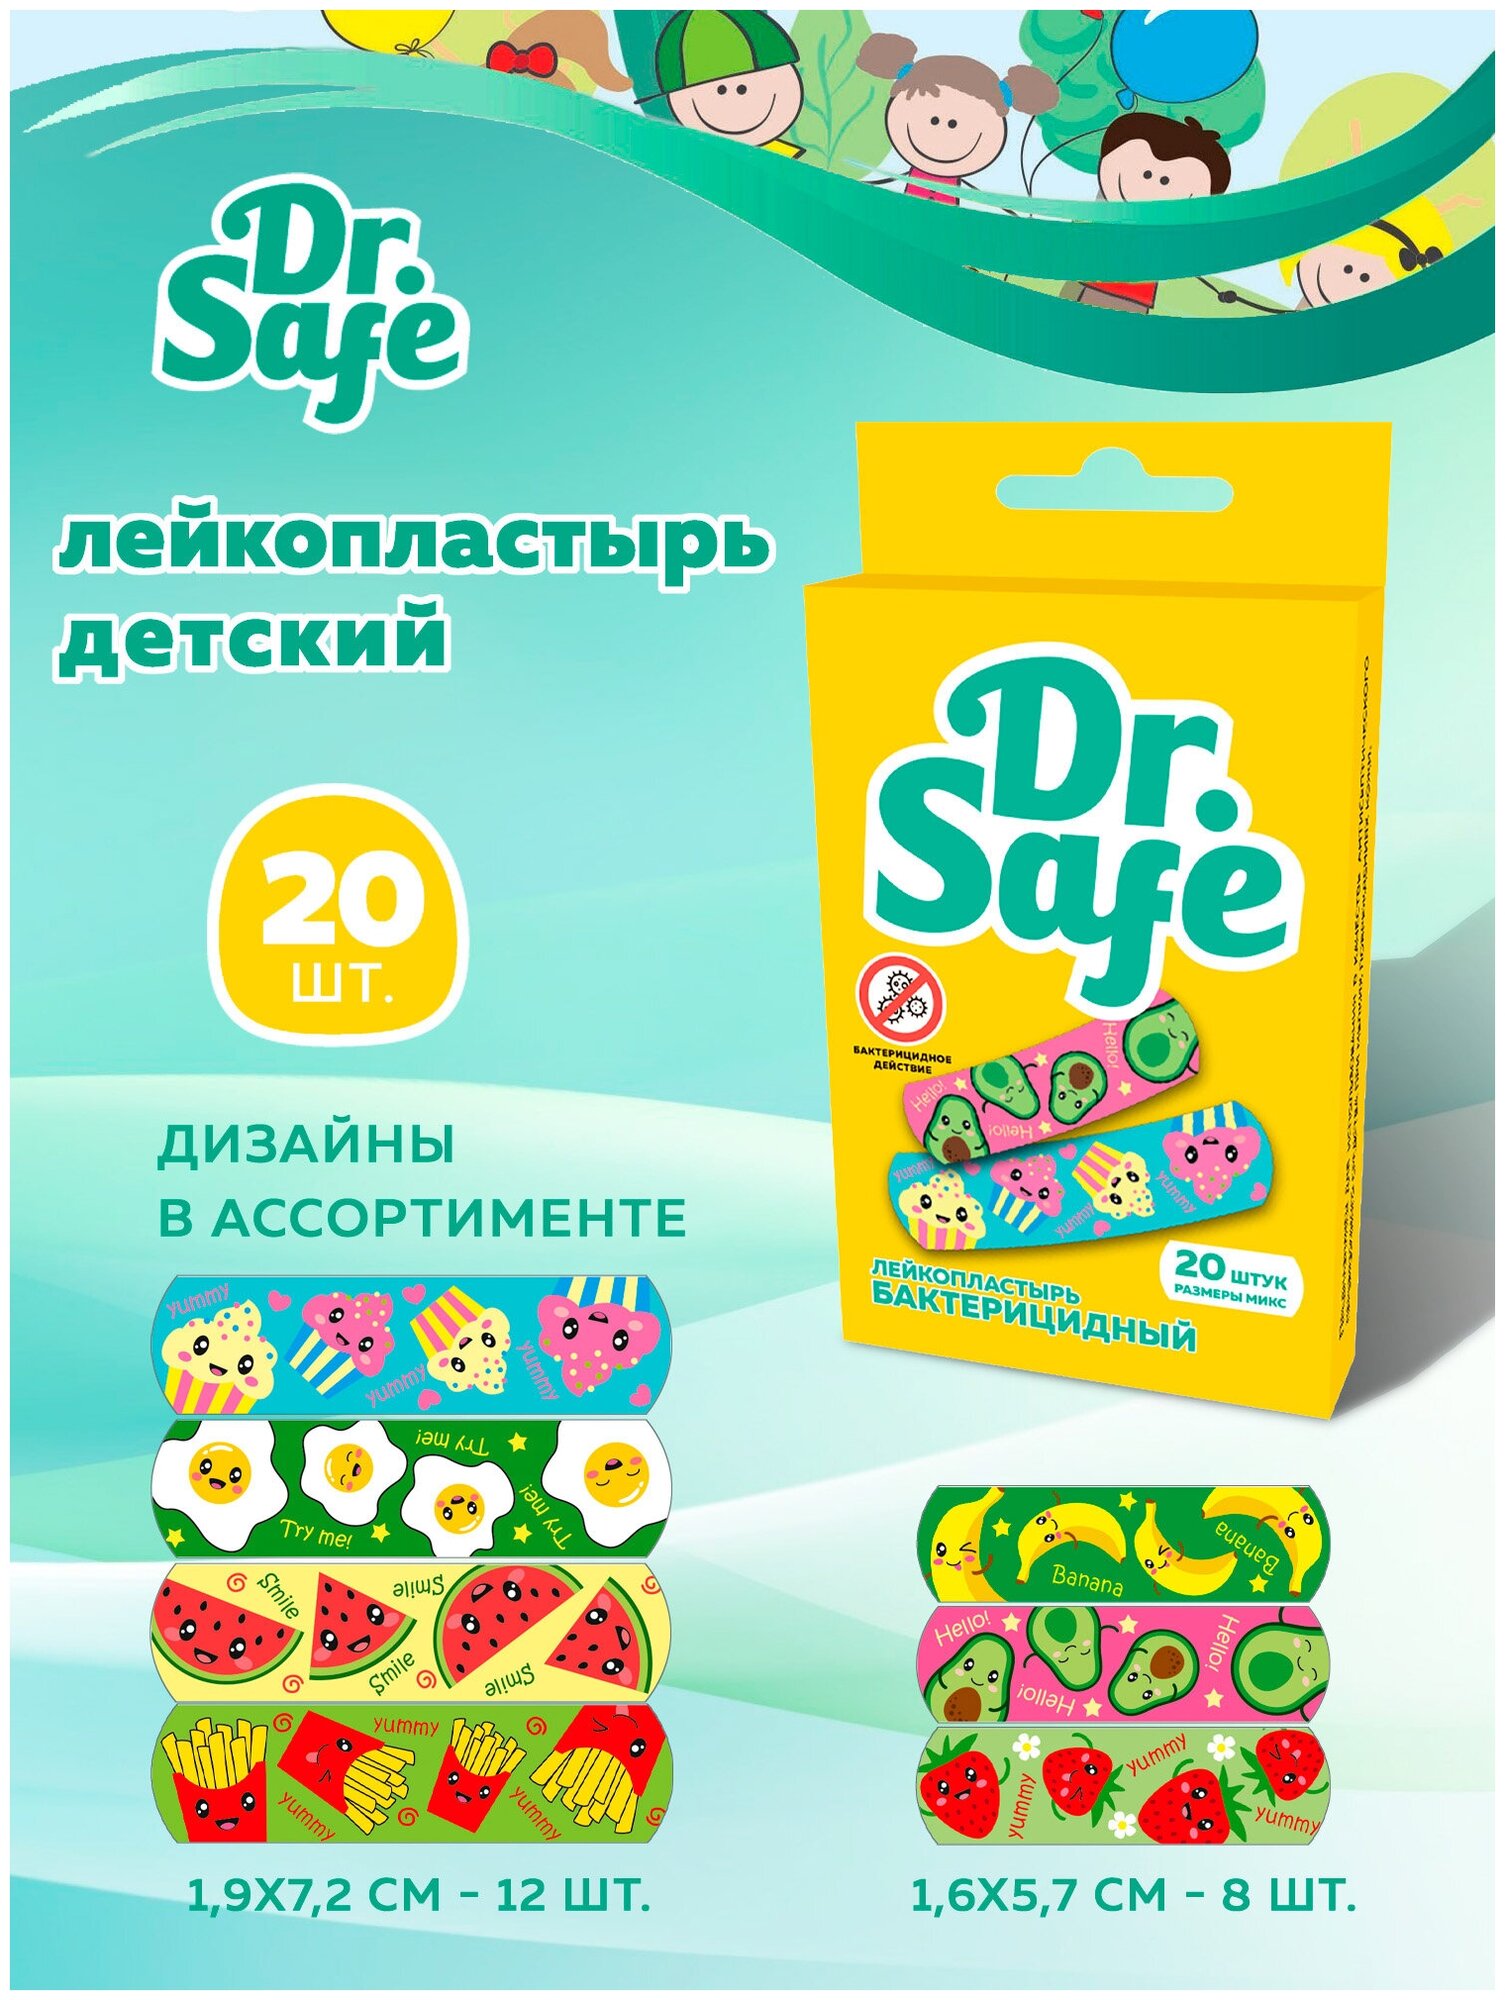 DR.SAFE Пластырь бактерицидный с рисунками FOOD 20 штук (16х57см - 8 шт; 19х72см - 12 шт.)